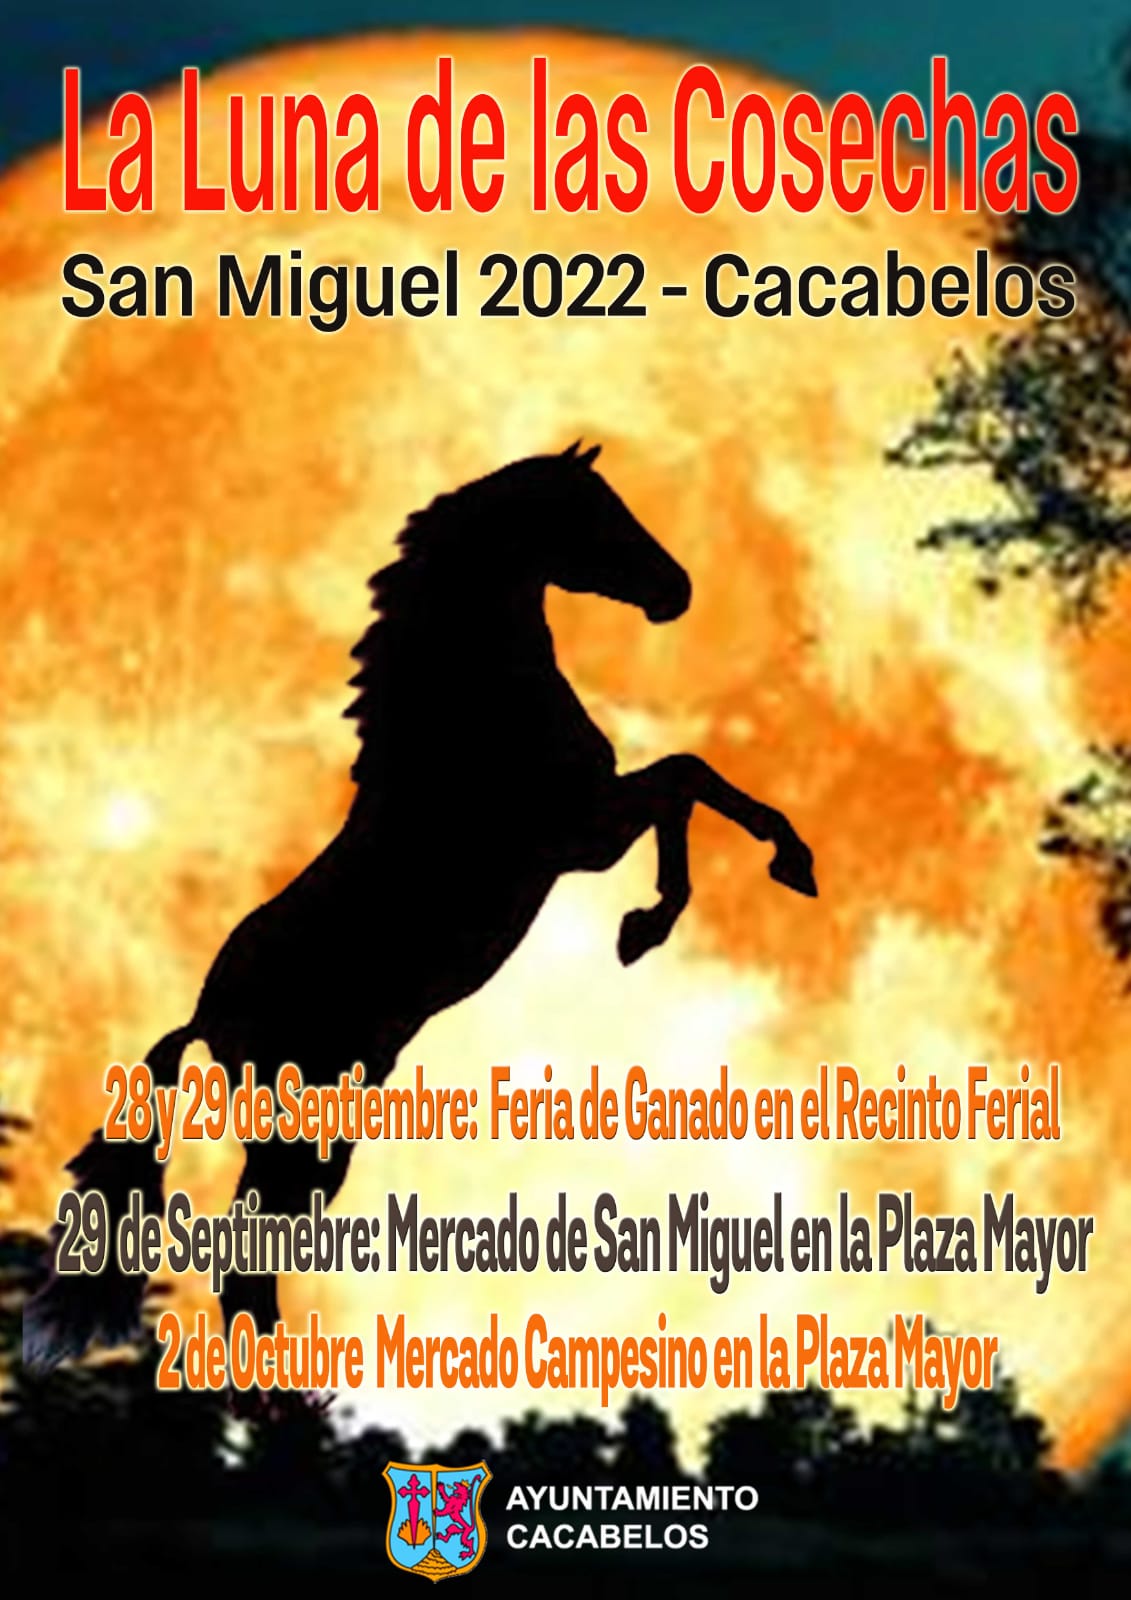 Cacabelos organiza la próxima semana la Feria de la luna de las cosechas y mercado de San Miguel 2